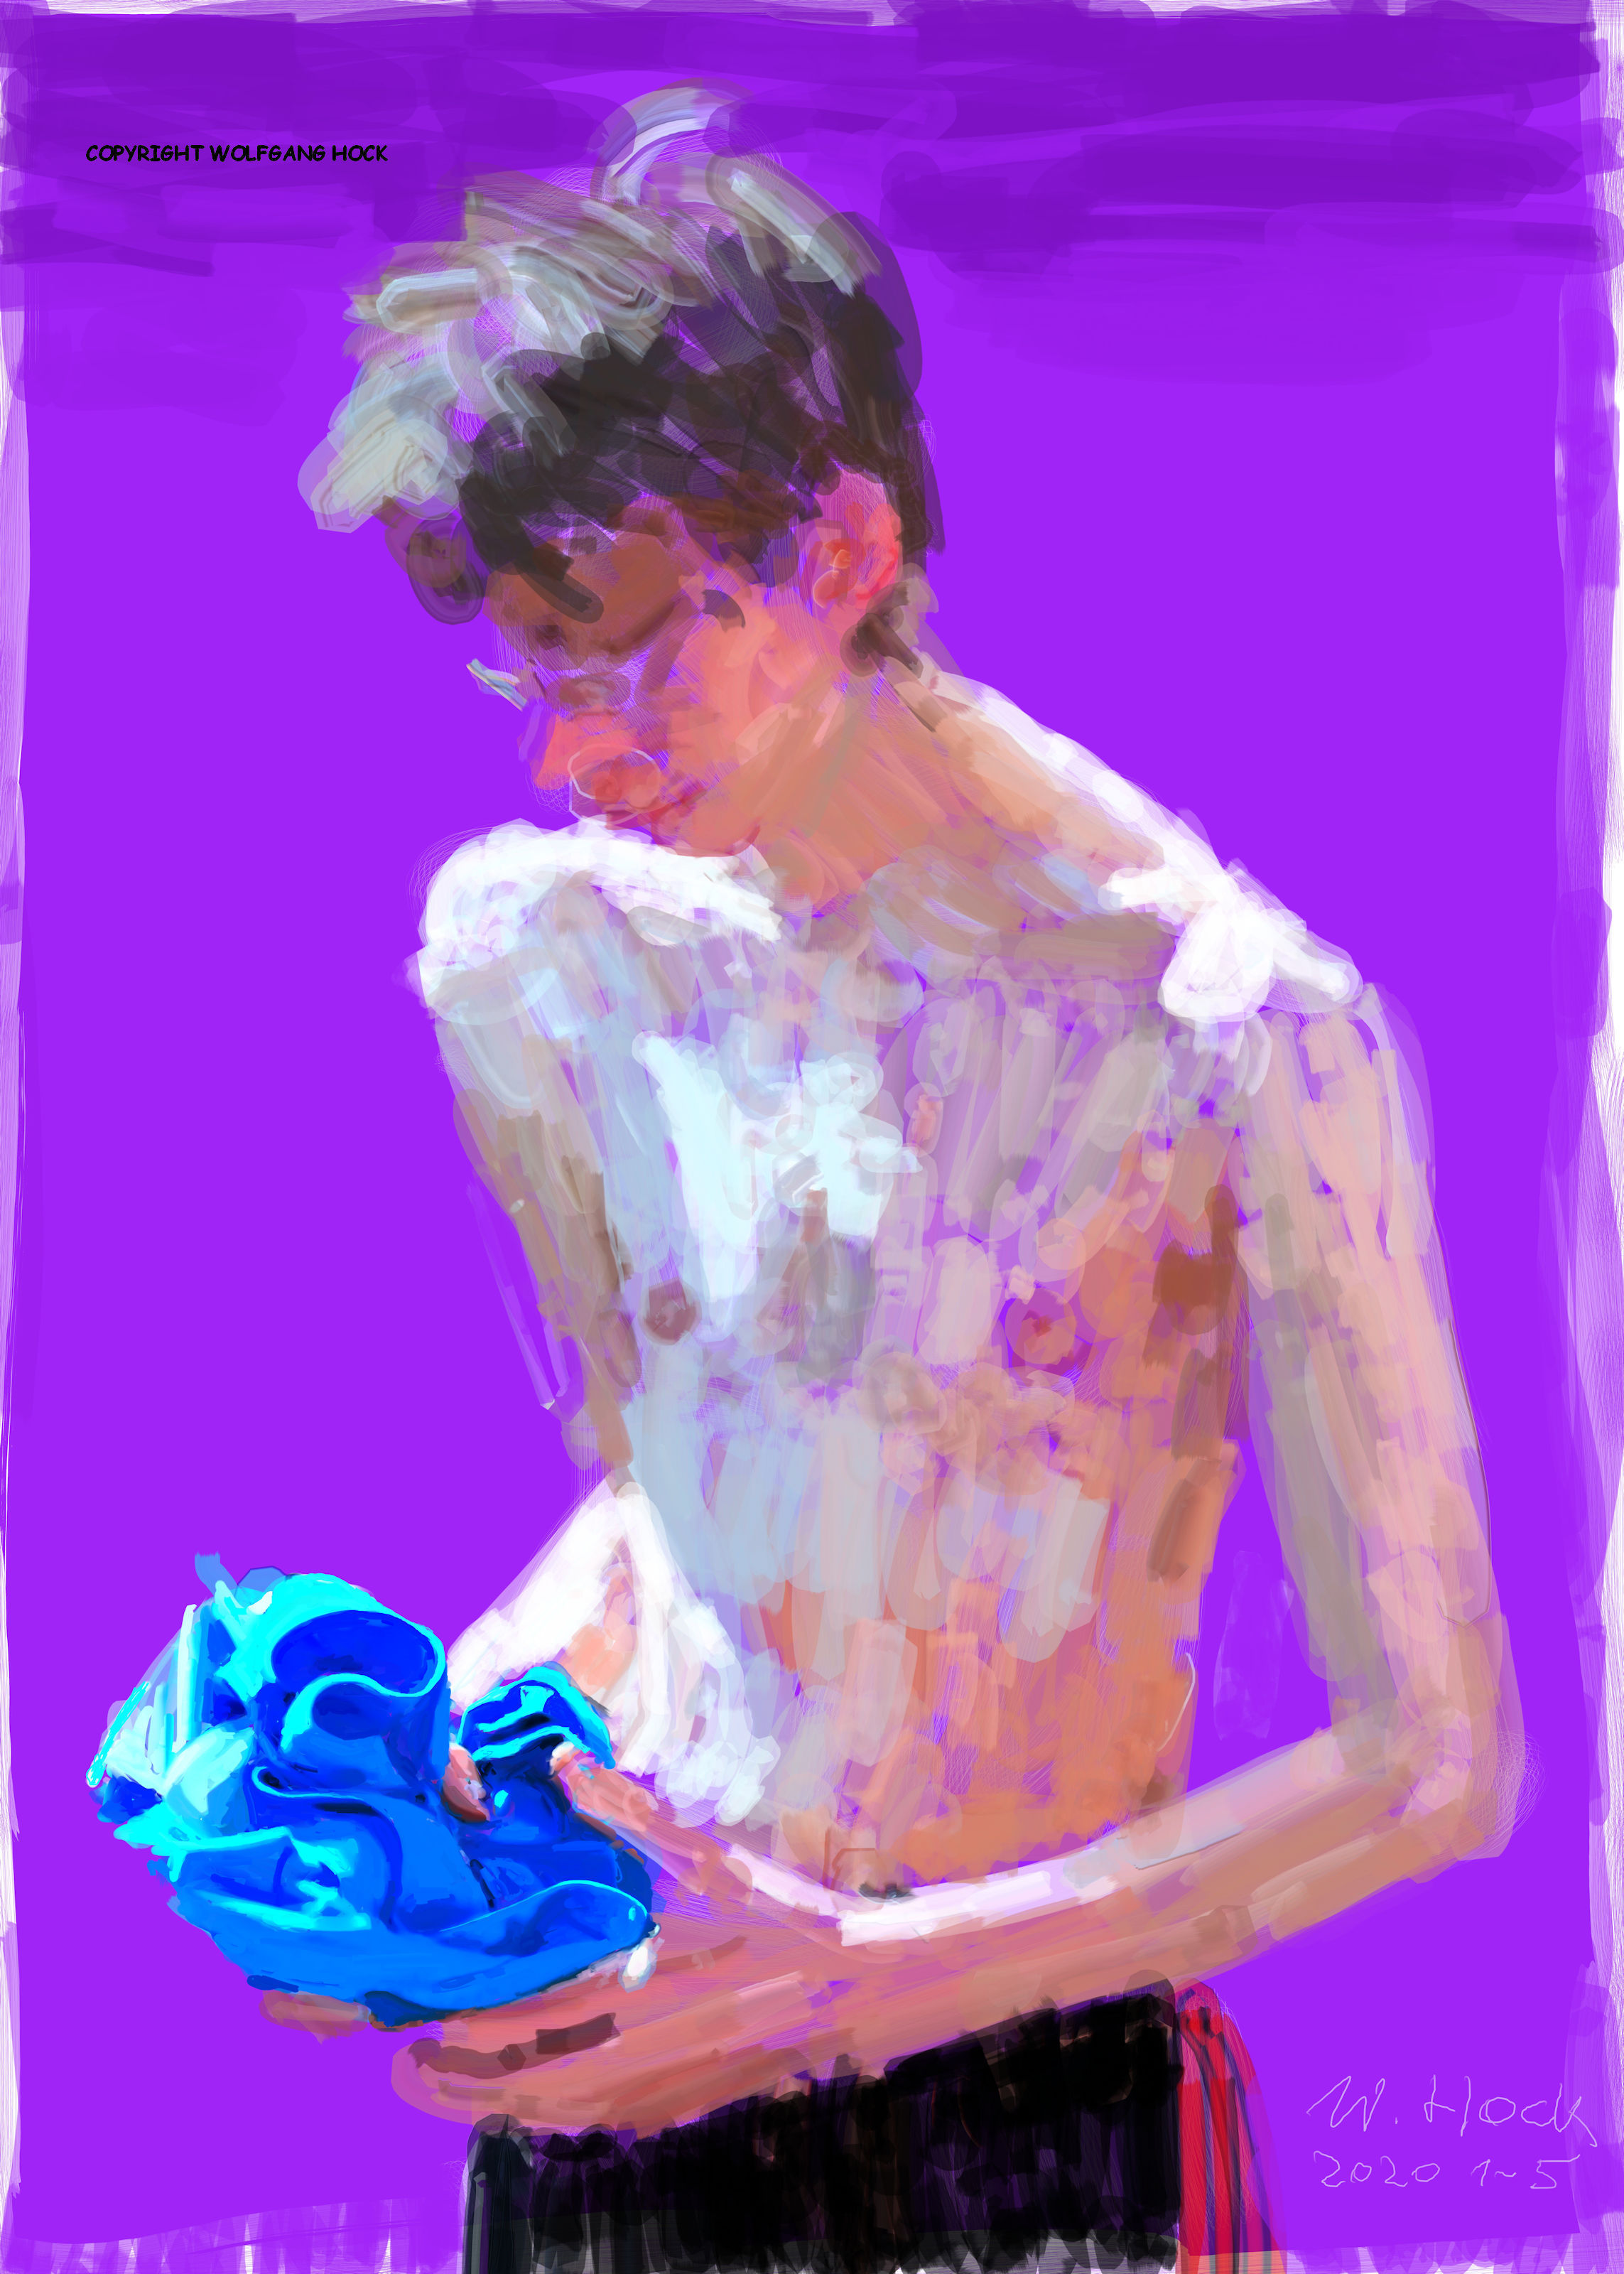 Magerer Junge - Skinny boy - Rapaz magro 2020   Handmade digital painting on canvas 100 x 140 cm (192 megapixels)